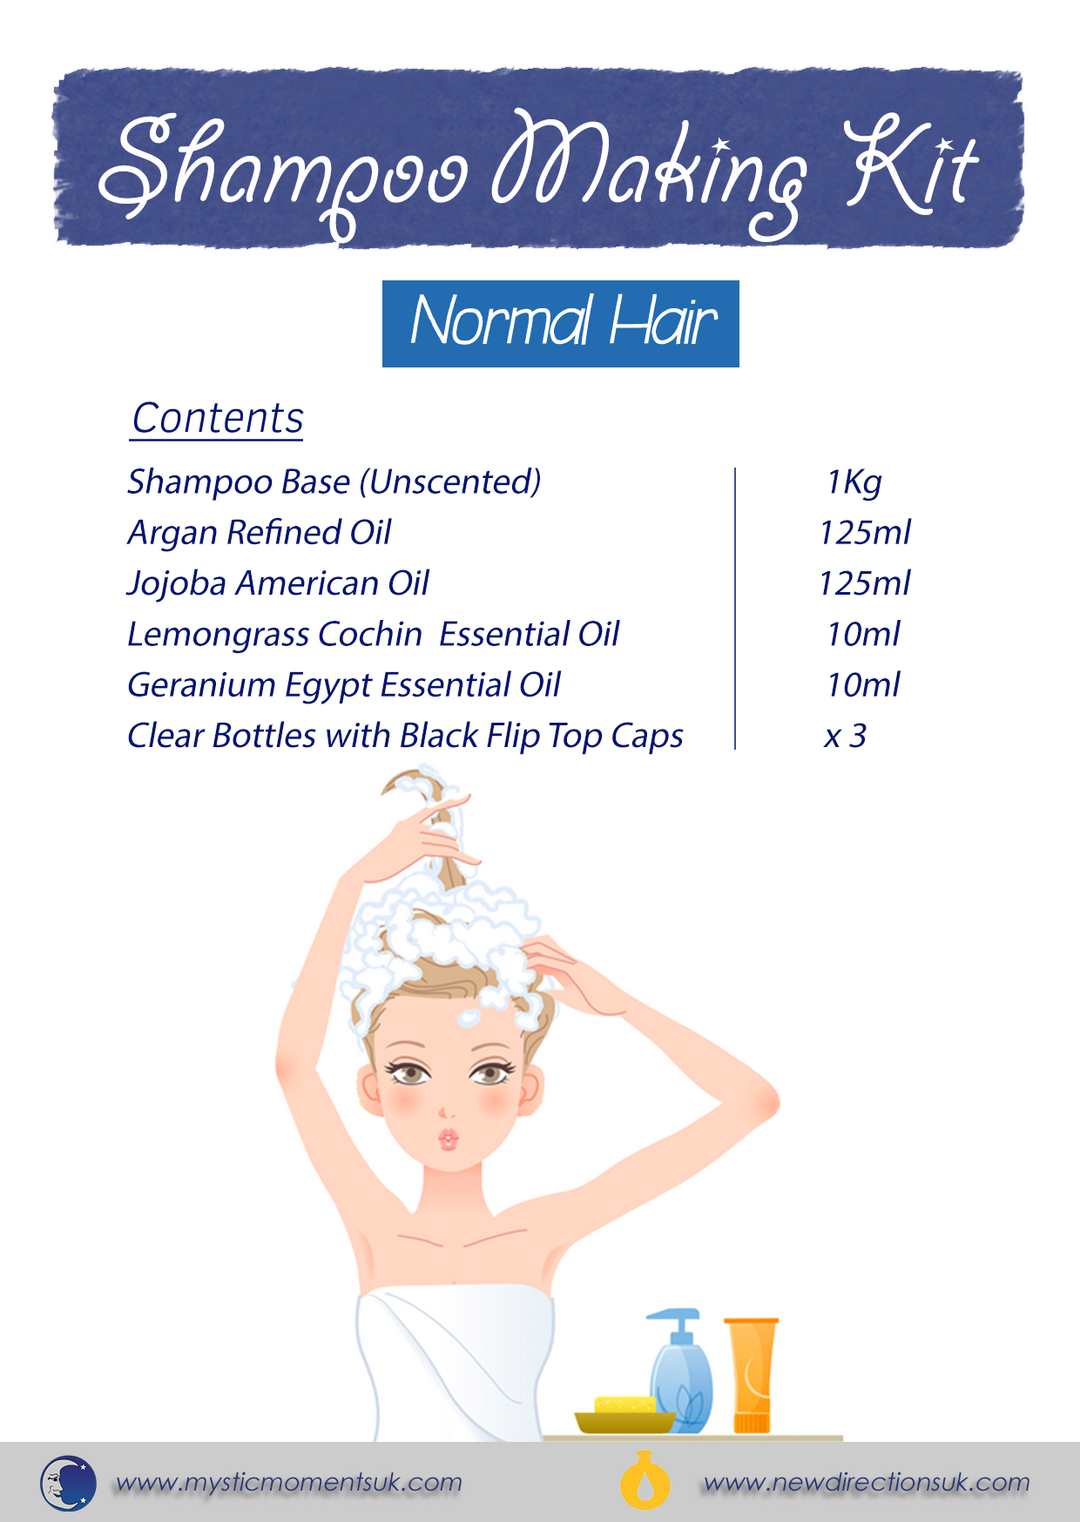 Shampoo Making Kit - NORMAL HAIR